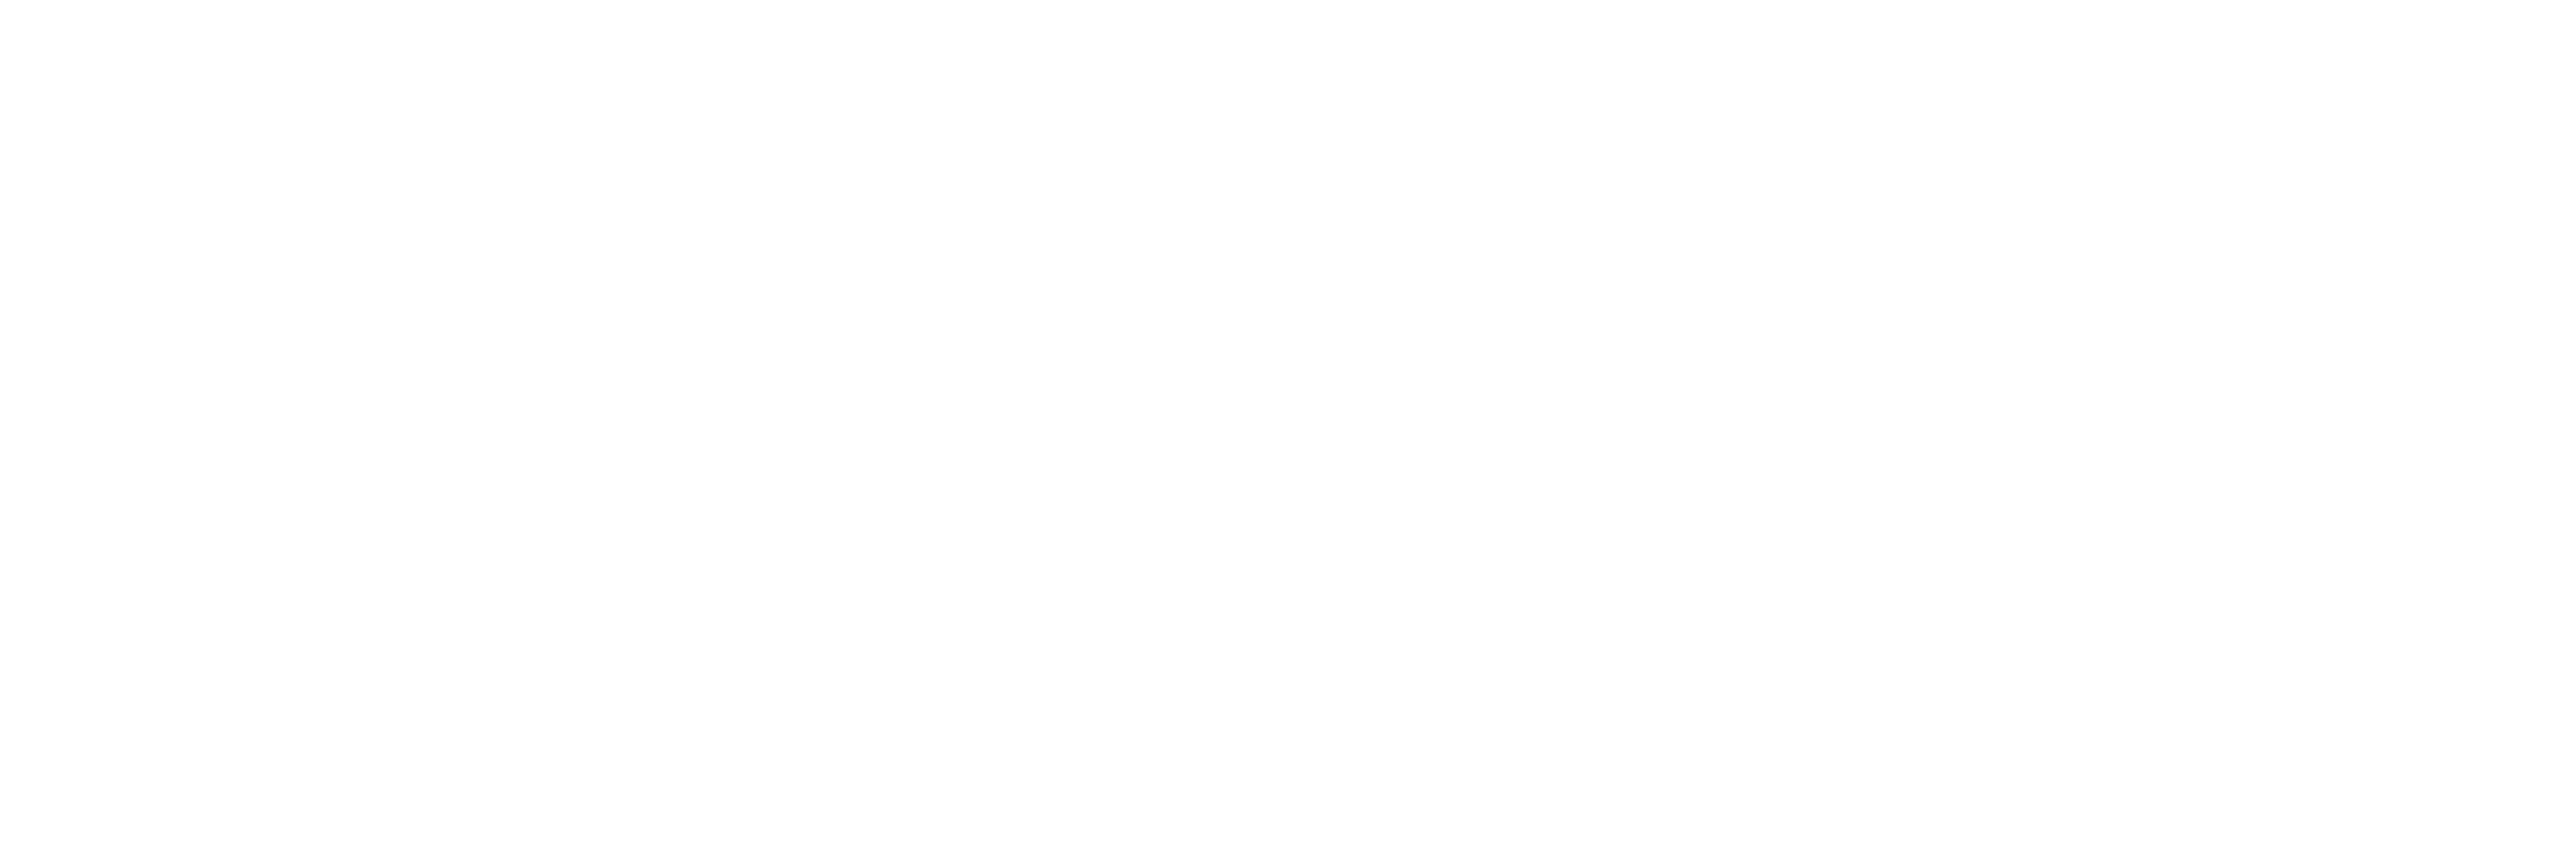 Opposing Force logo